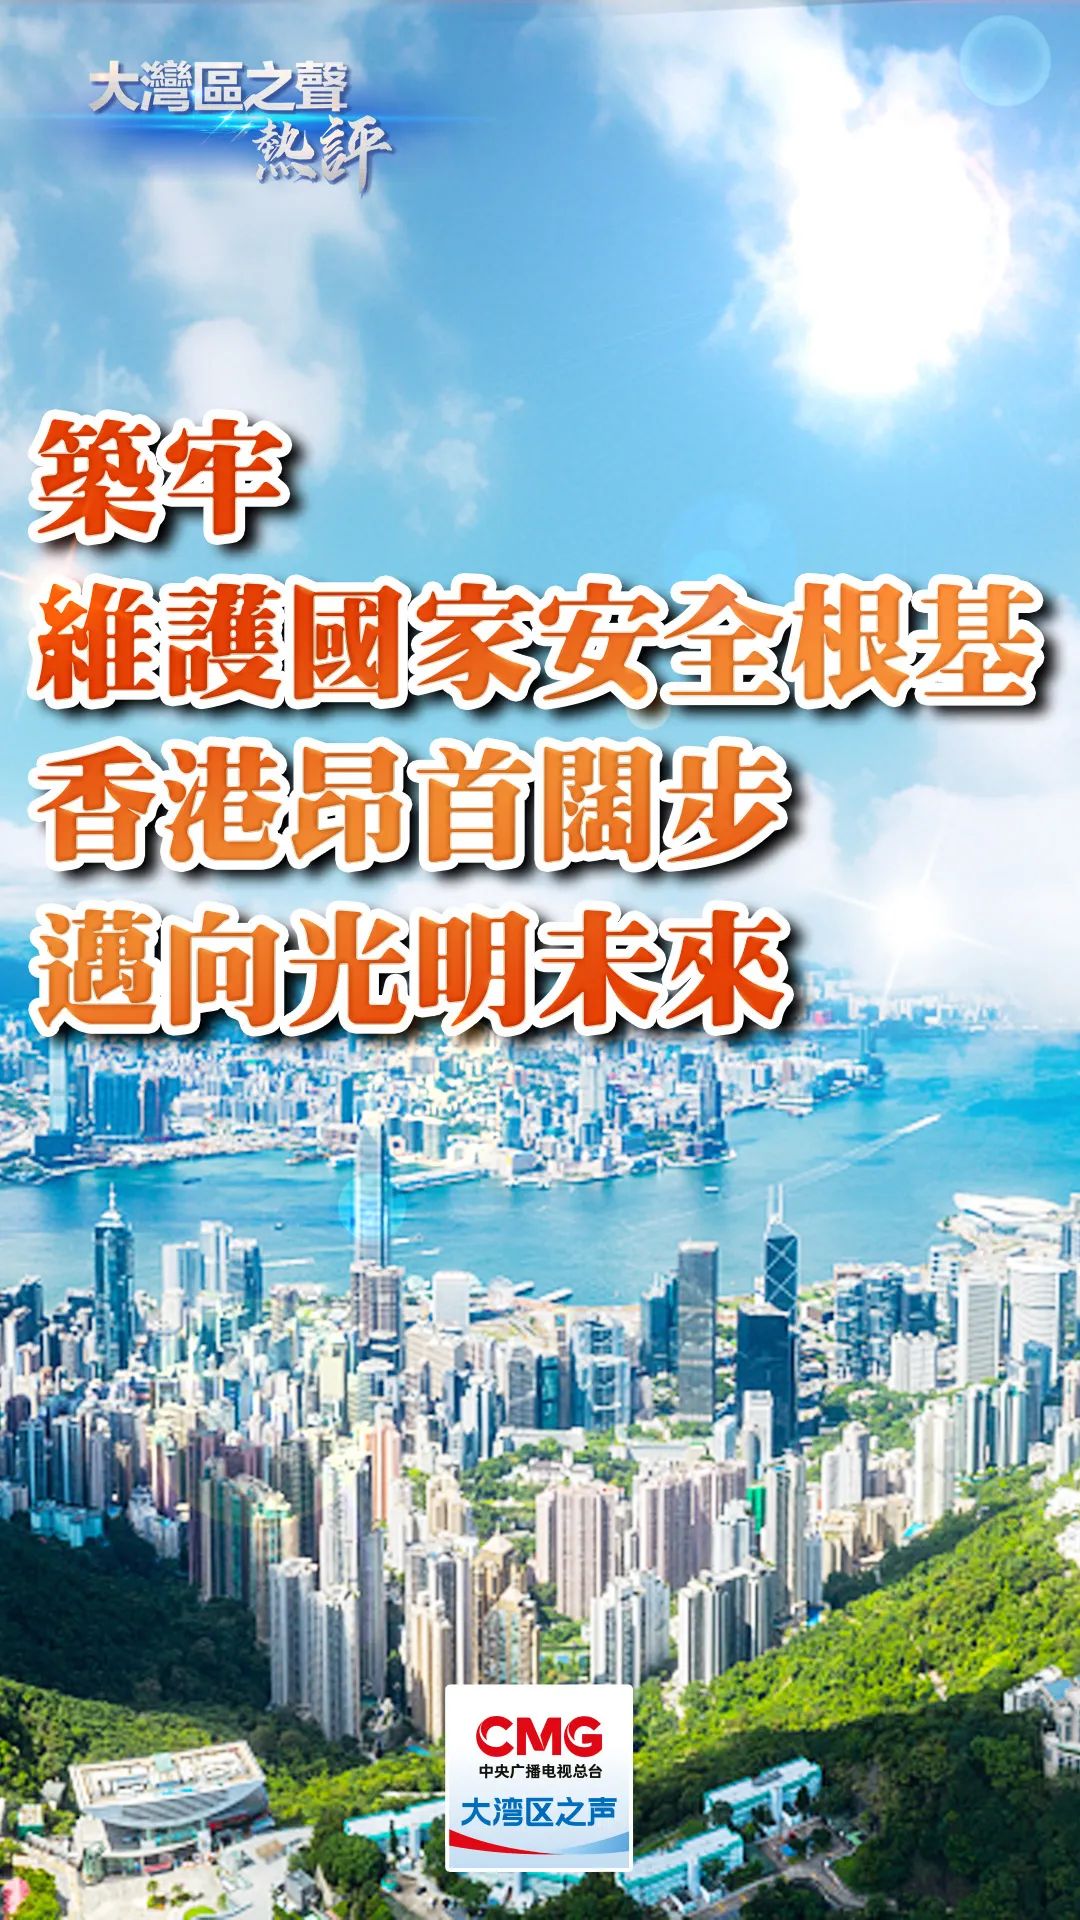 大湾区之声热评：筑牢维护国家安全根基 香港昂首阔步迈向光明未来